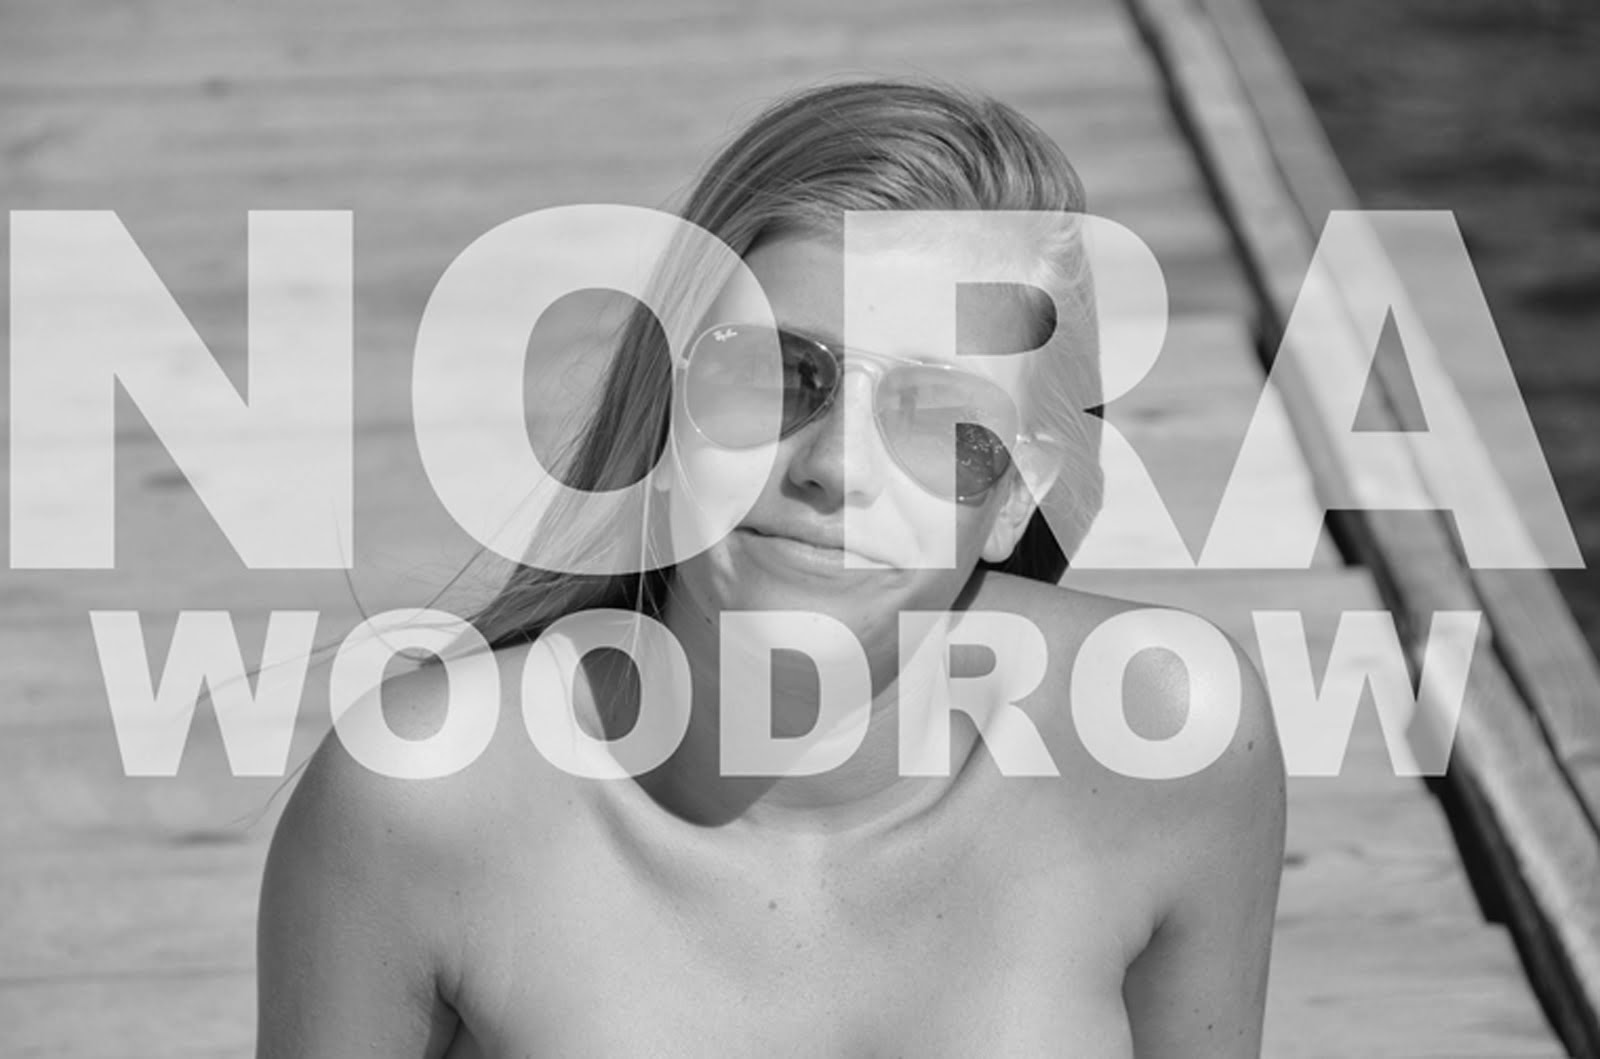 Nora Woodrow